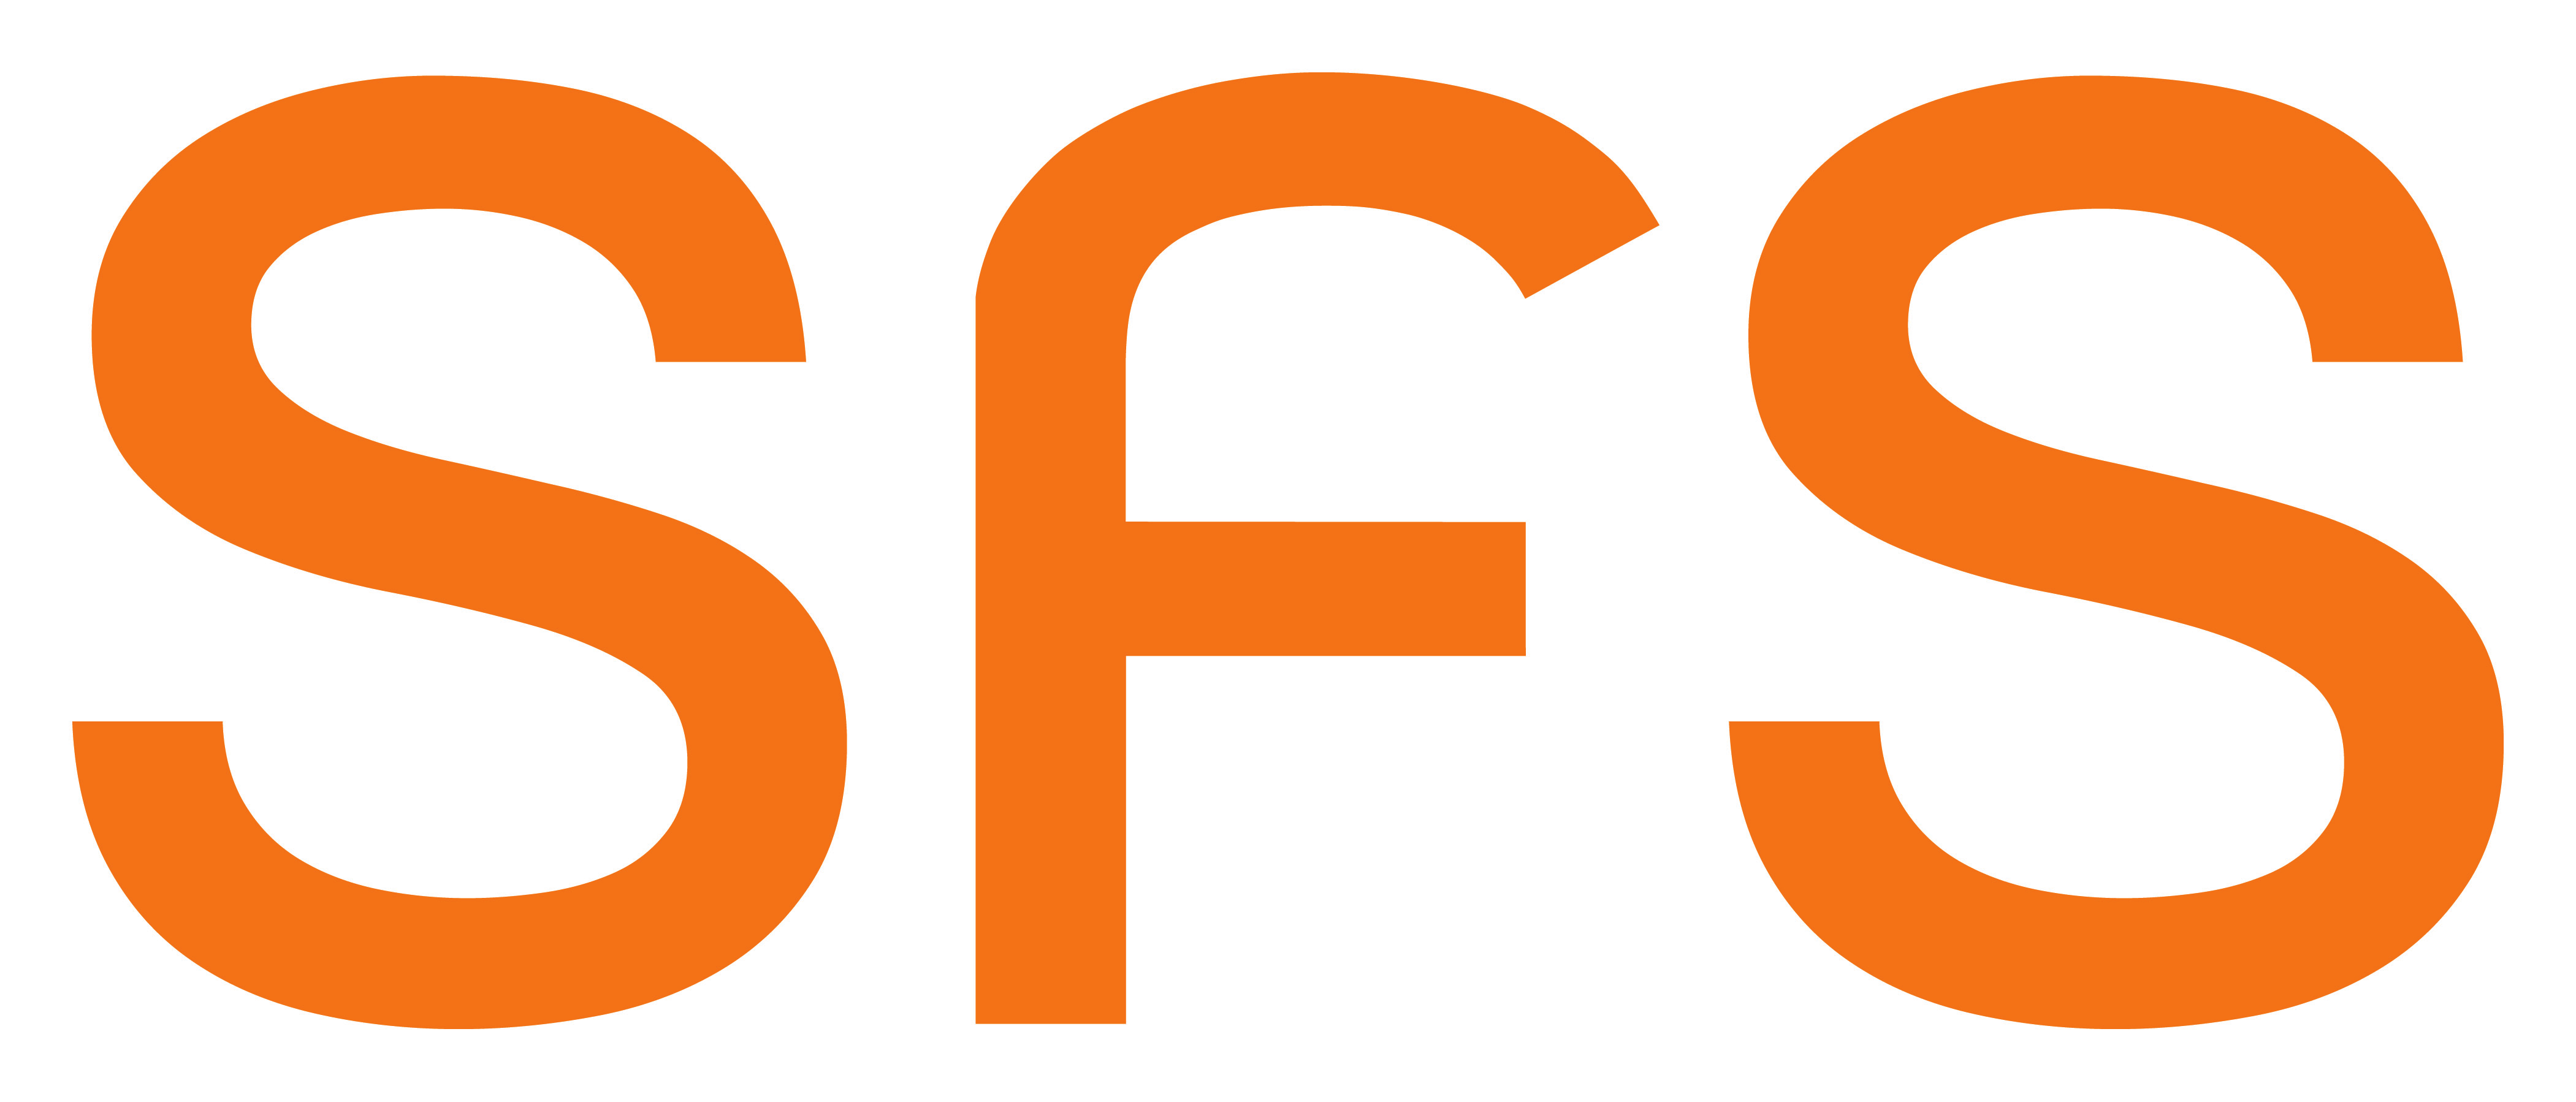 SFS syn på högskolans omfattning, utbud, finansiering och antagning + - + - + - + - + - + - + - + - + - + - +